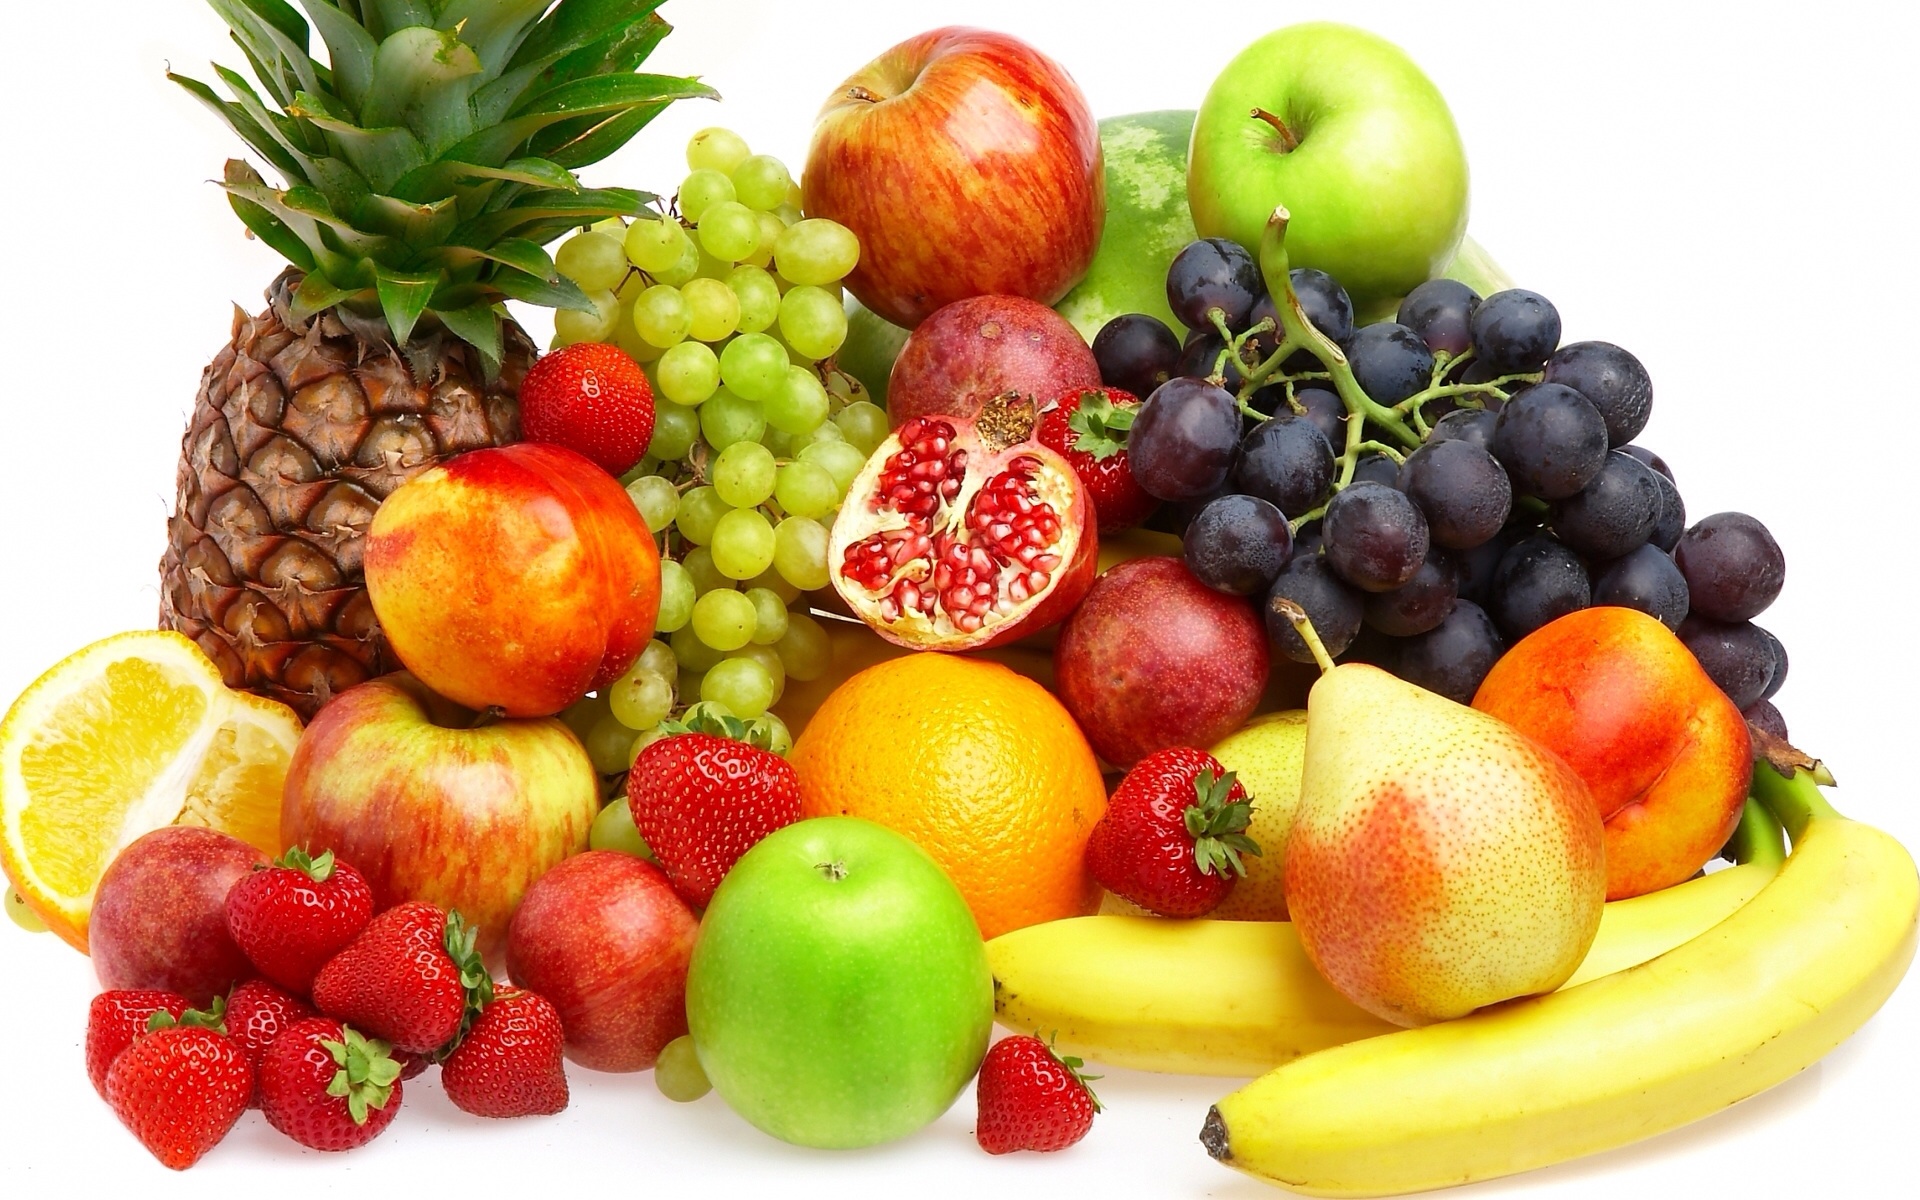 fruits_legumes